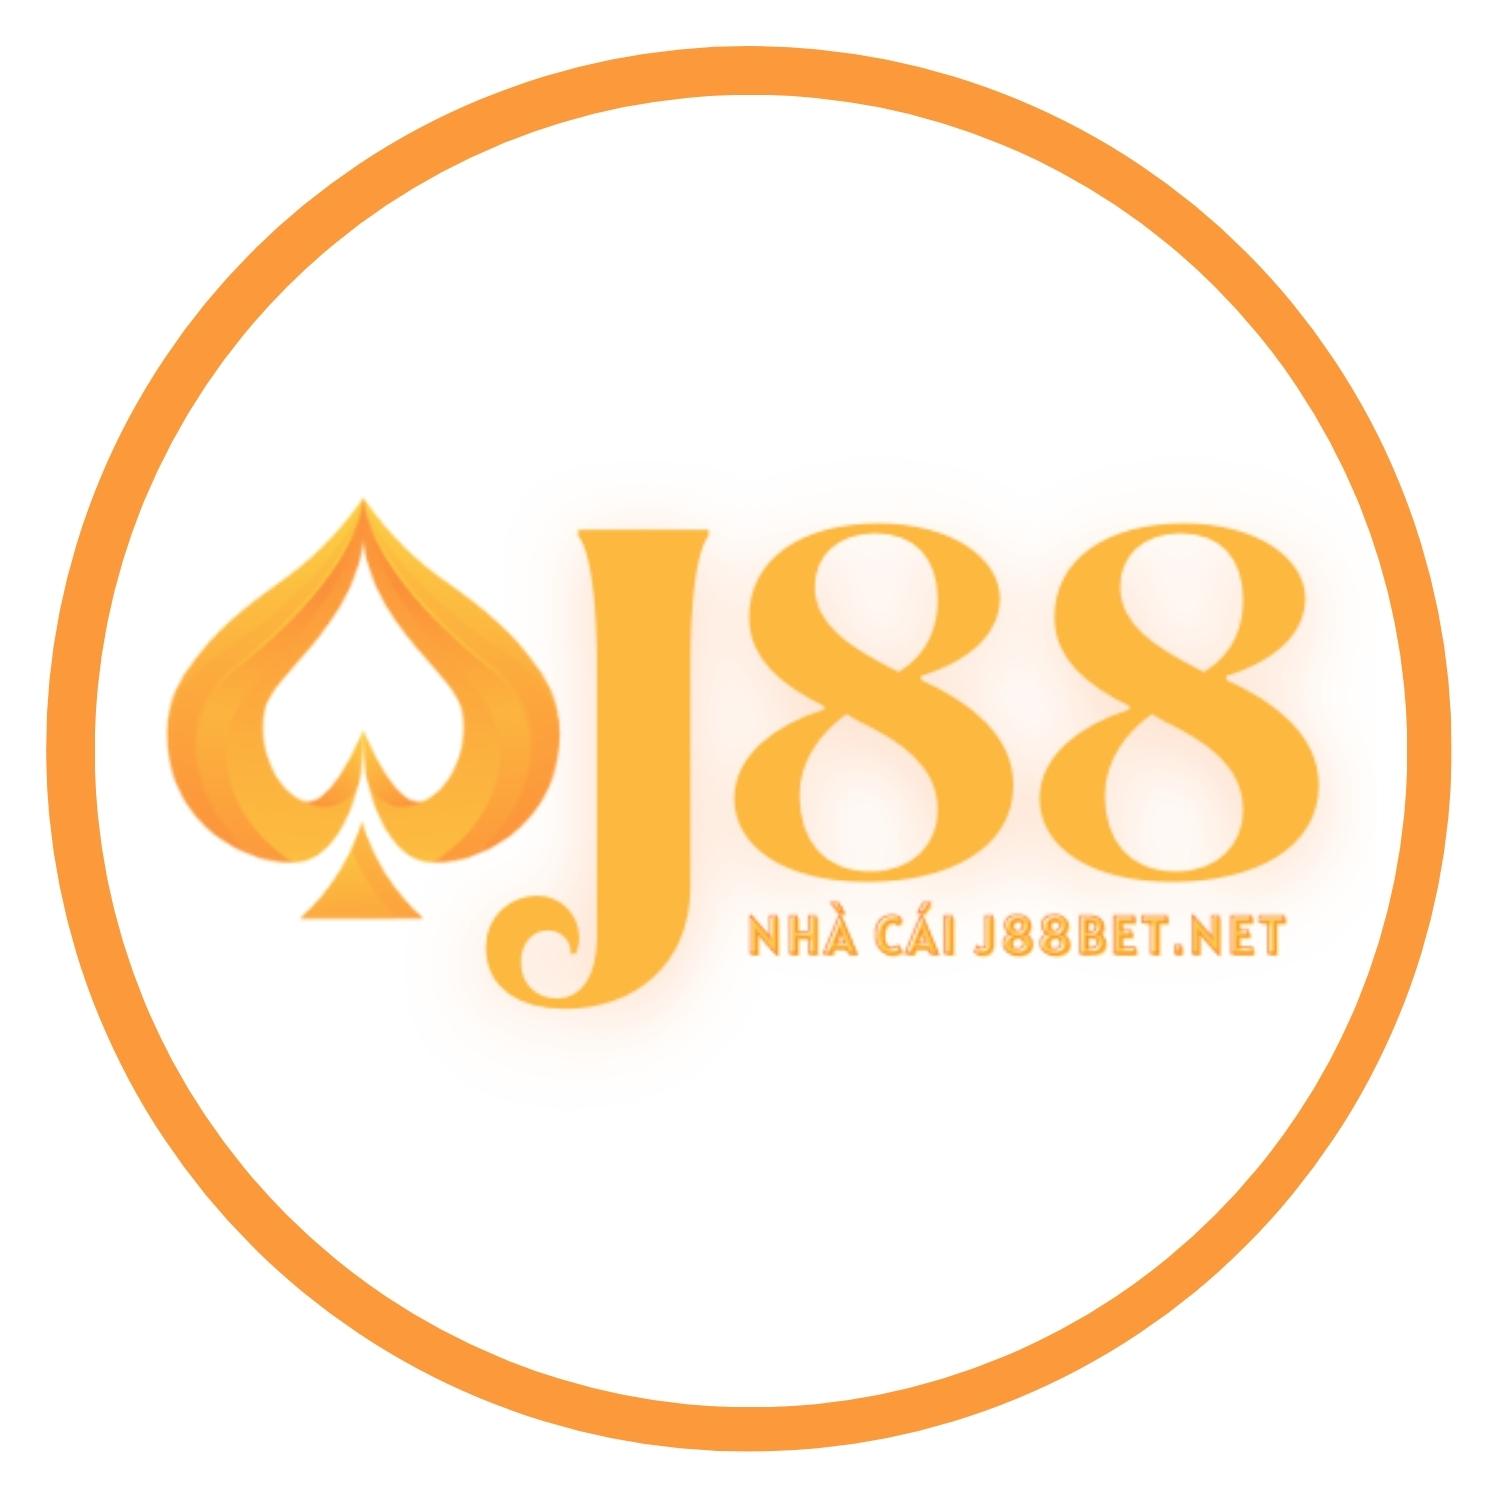 J88 Nhà cái cá cược bóng đá trực tuyến hàng đầu châu Á